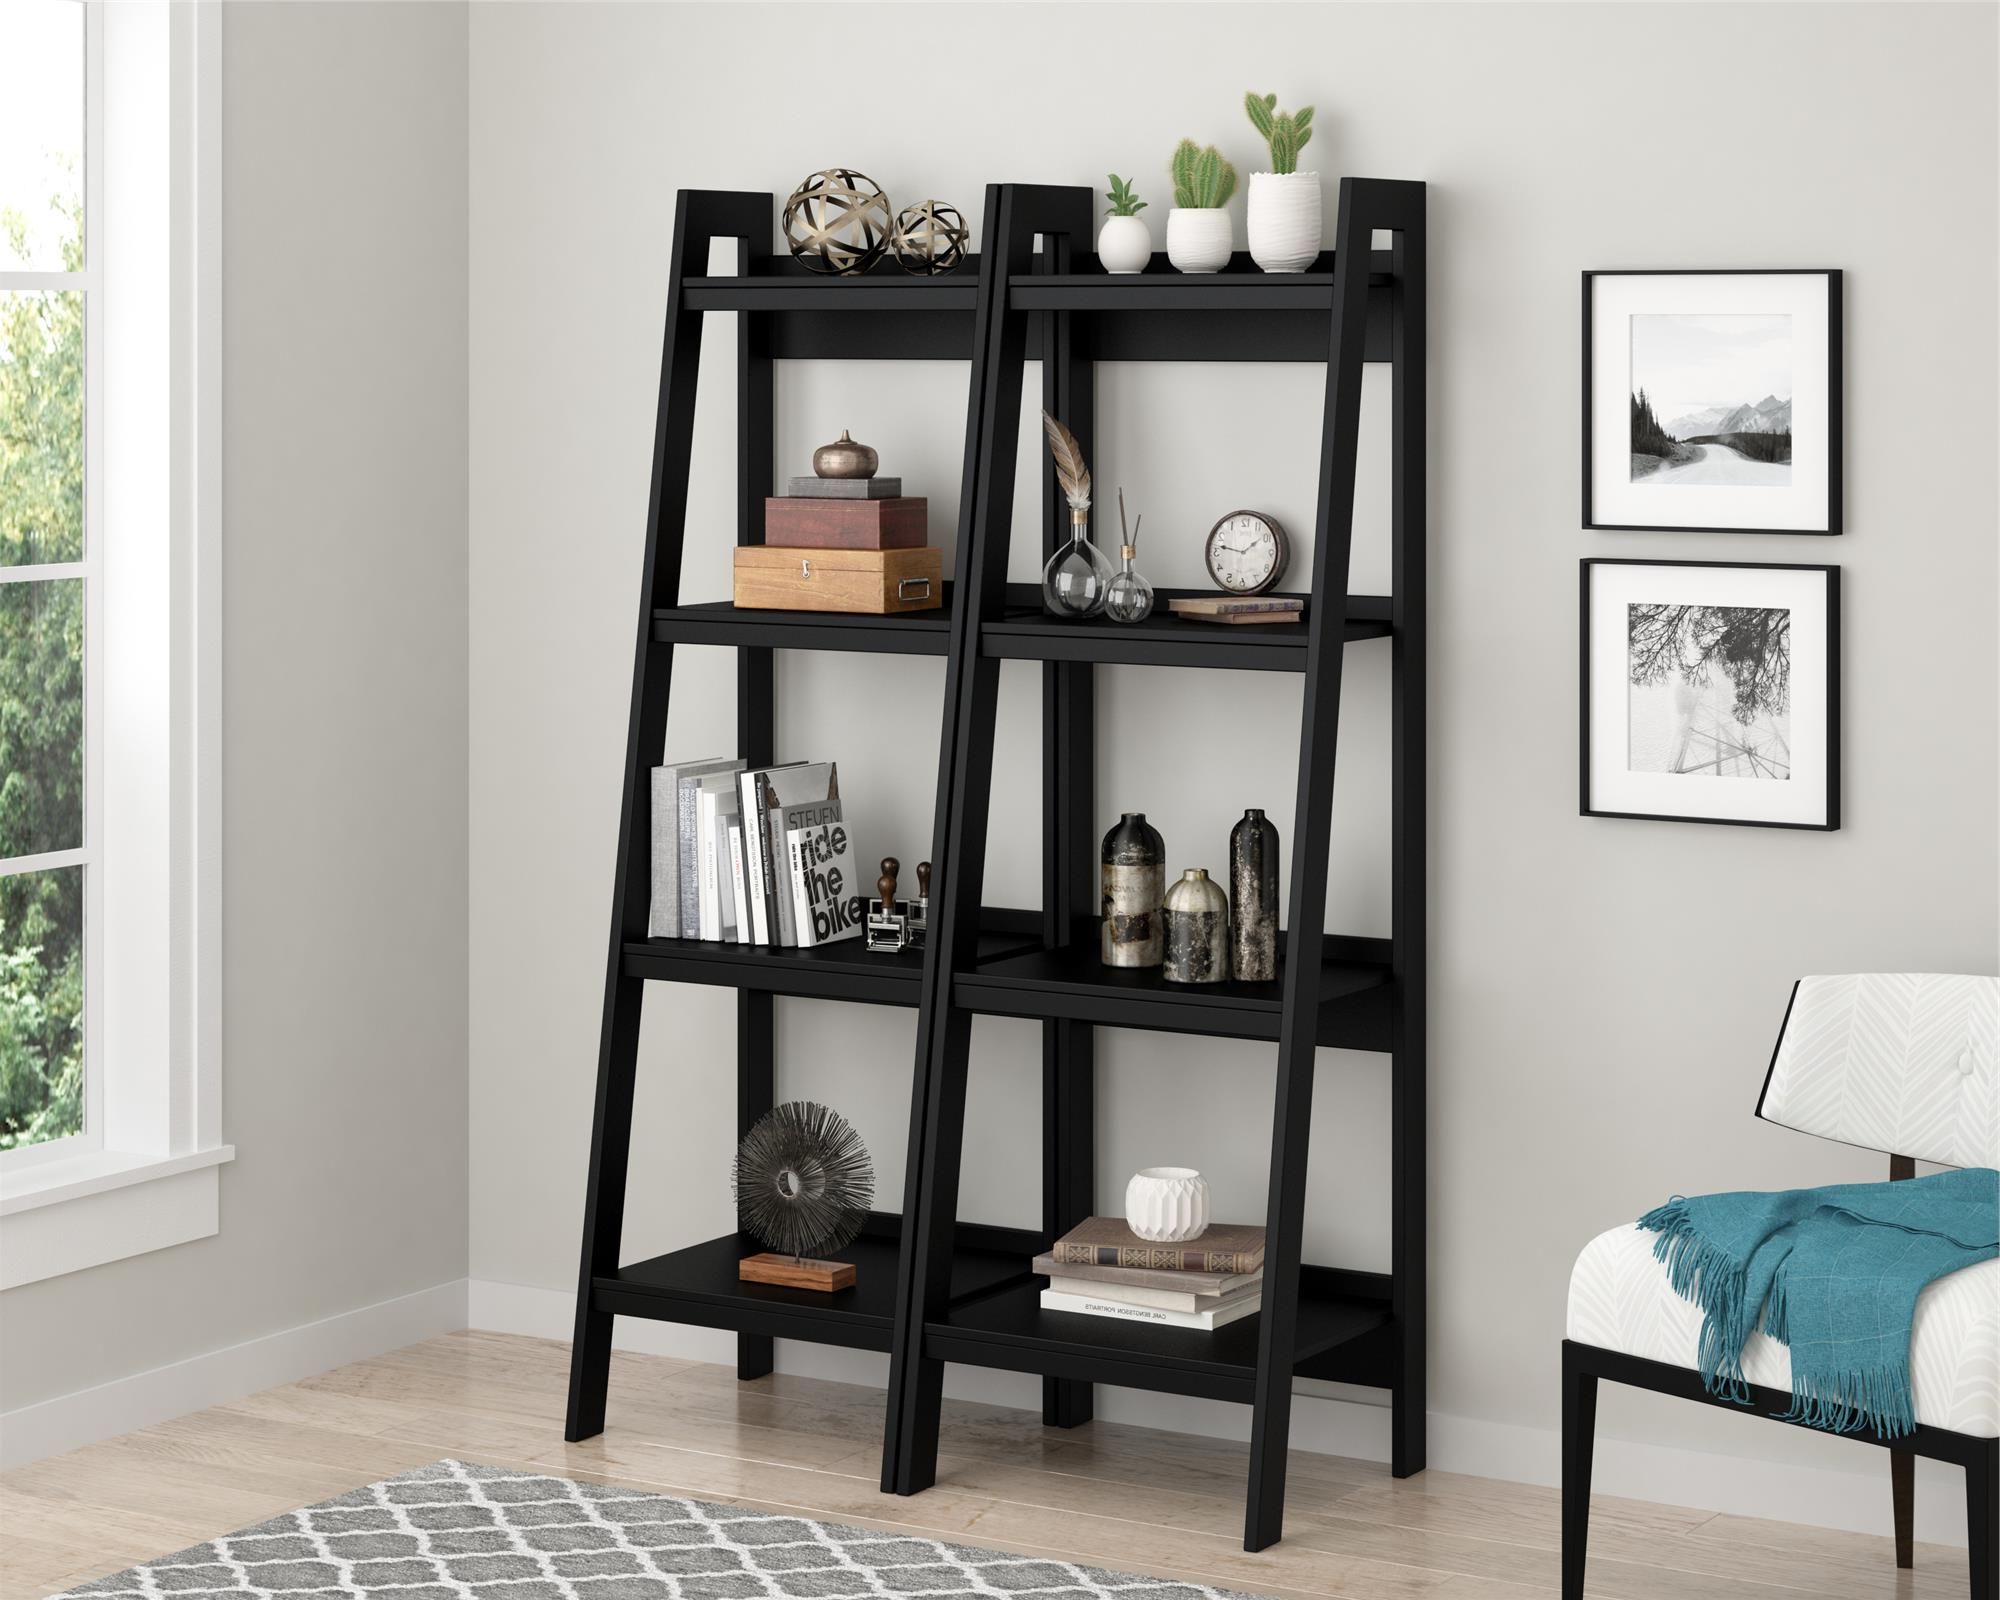 2018 Ameriwood Home Hayes 4 Shelf Ladder Bookcase Bundle, Black – Walmart Inside 2 Shelf Black Ladder Desks (View 3 of 15)